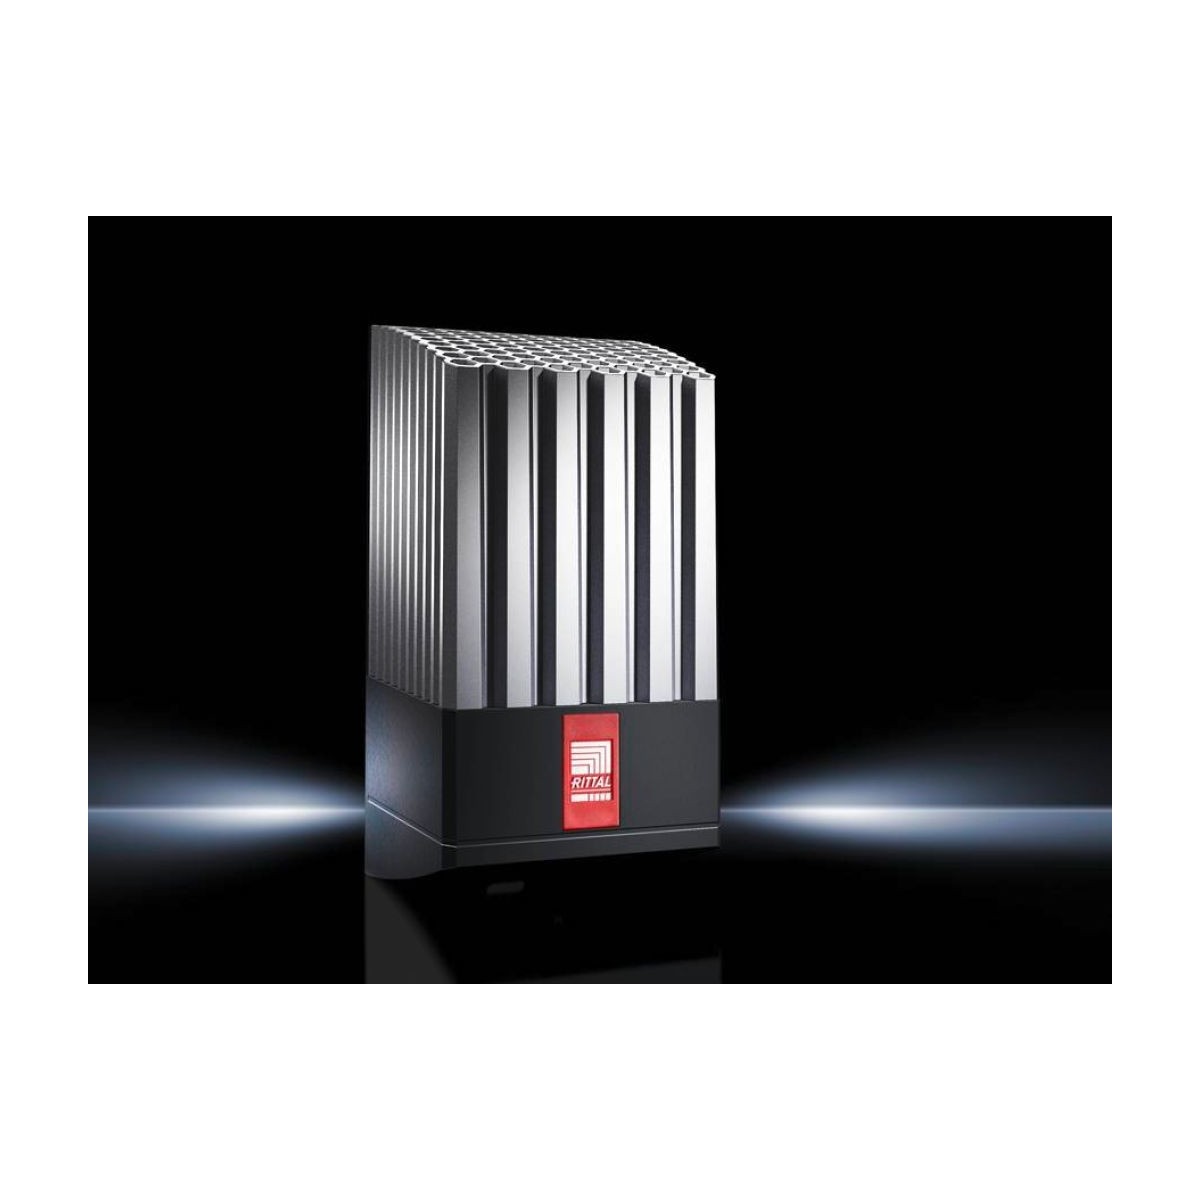 Rittal 3105.400 - PTC heater - Black - Gray - 1 fan(s) - 230 V - 50 - 60 Hz - 6 A